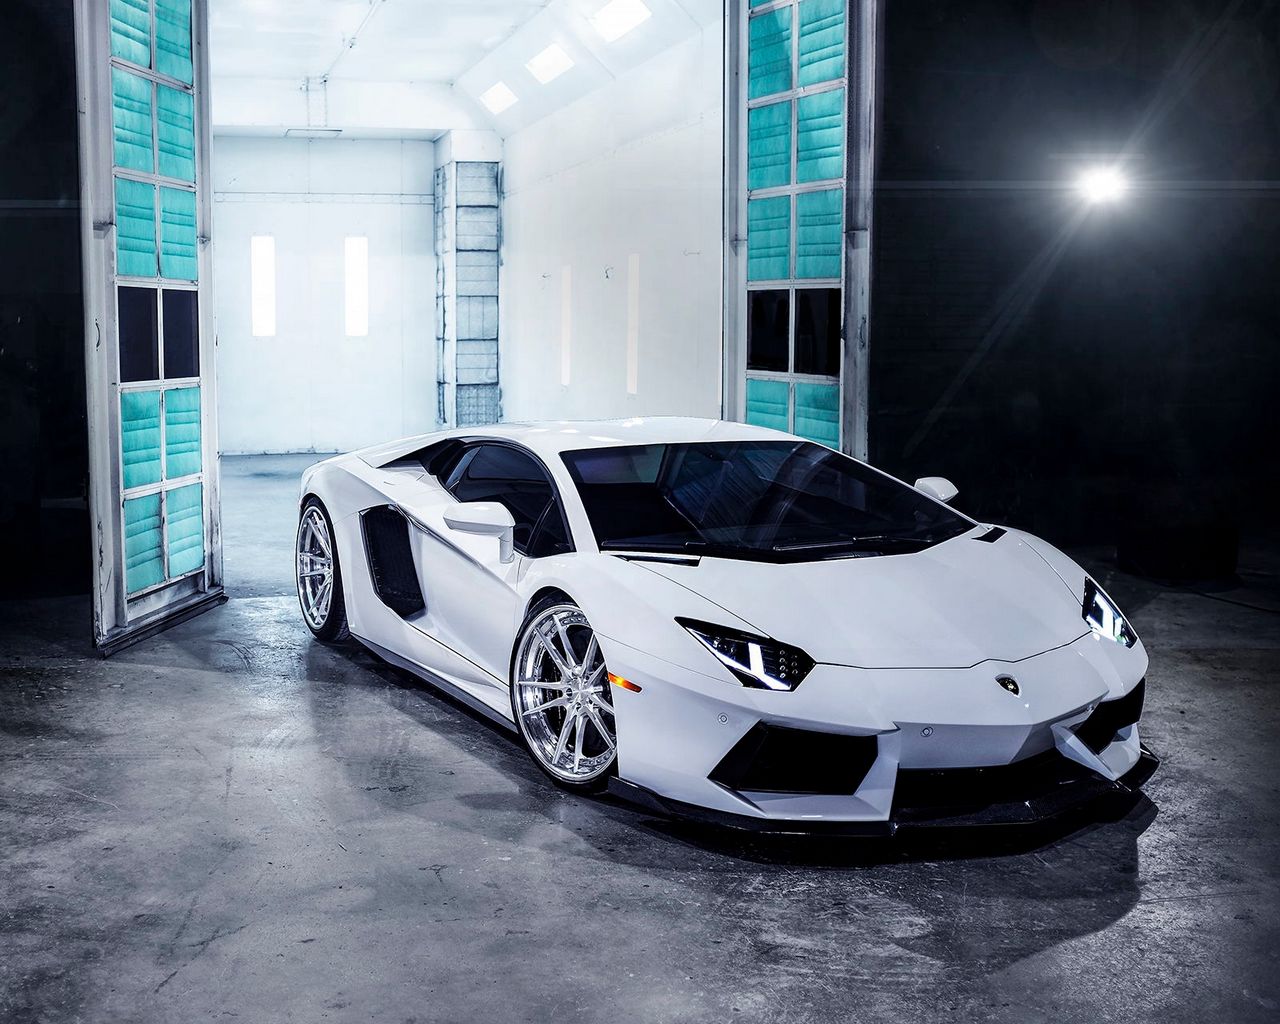 Hãy cập nhật hình nền 1280x1024 nổi bật về chiếc siêu xe Lamborghini Aventador màu trắng tinh khiết với một thiết kế đầy ngầu và đã mắt. Hình ảnh phía trước tuyệt đẹp này sẽ giúp bạn thư giãn tuyệt vời mỗi khi sử dụng máy tính. Hãy nhấn vào hình liên quan để cập nhật ngay hôm nay.